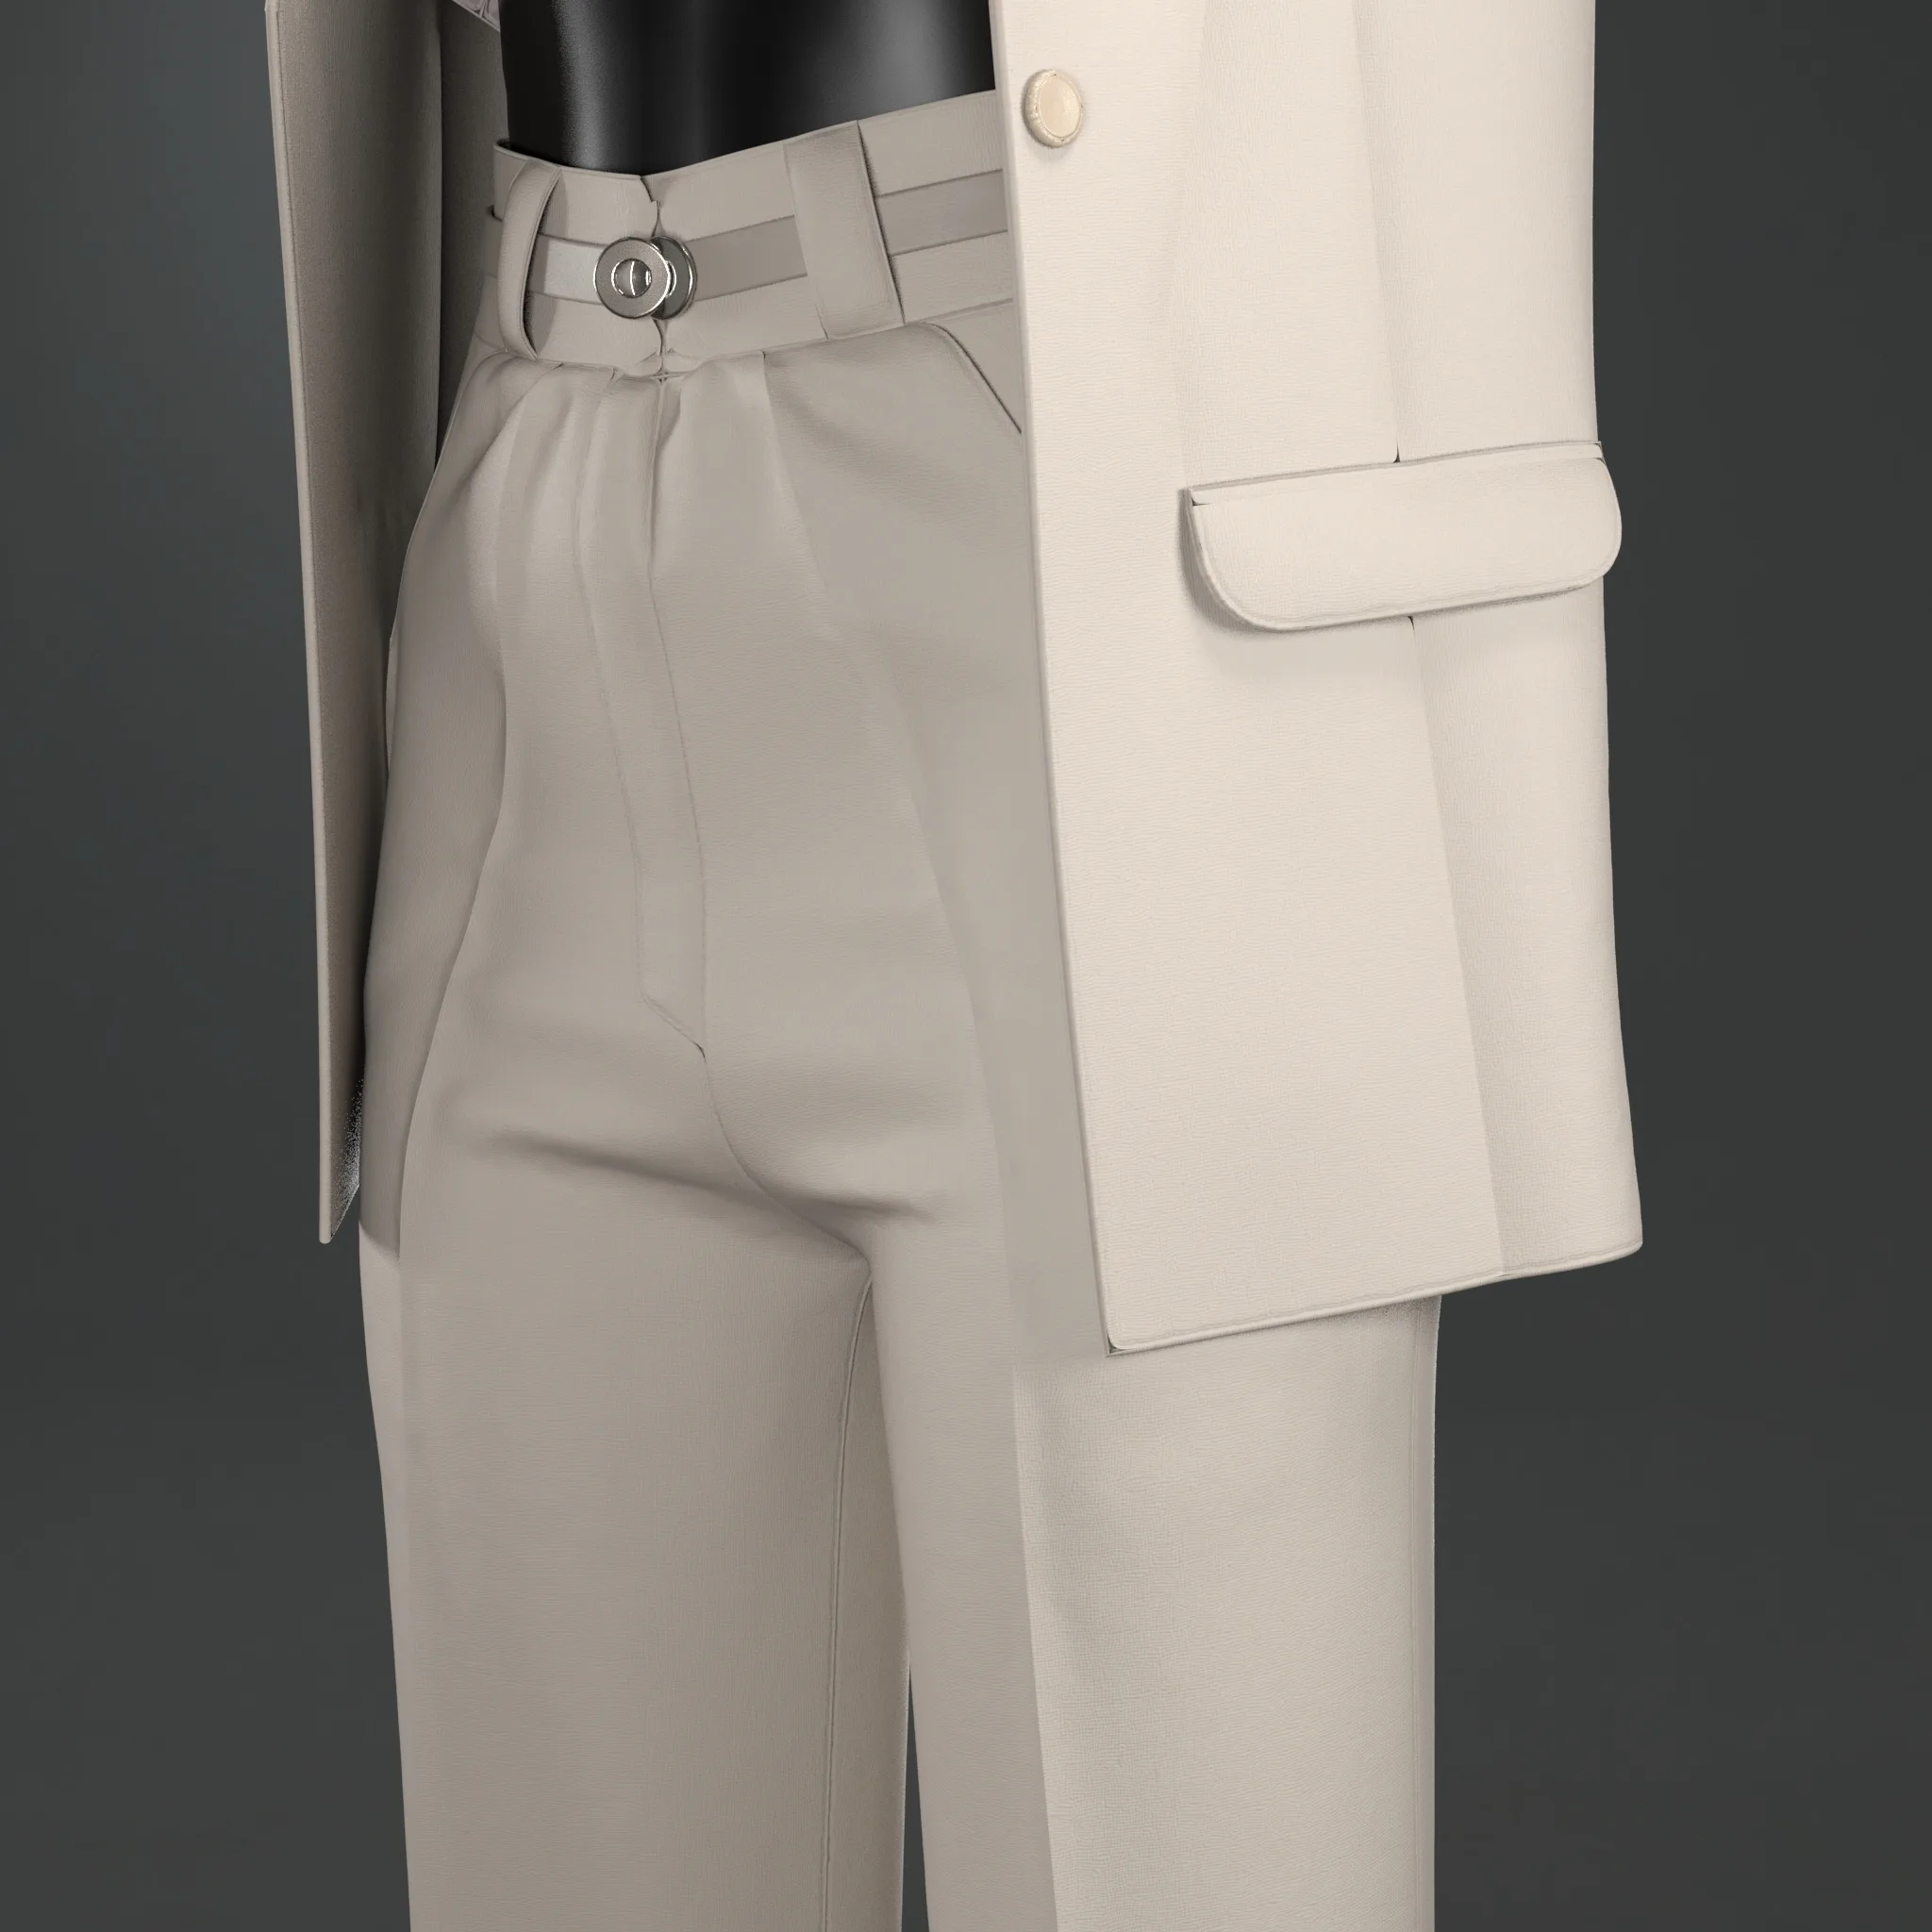 Minimal outfit (Marvelous Designer & Clo3d & FBX & OBJ & Texture)